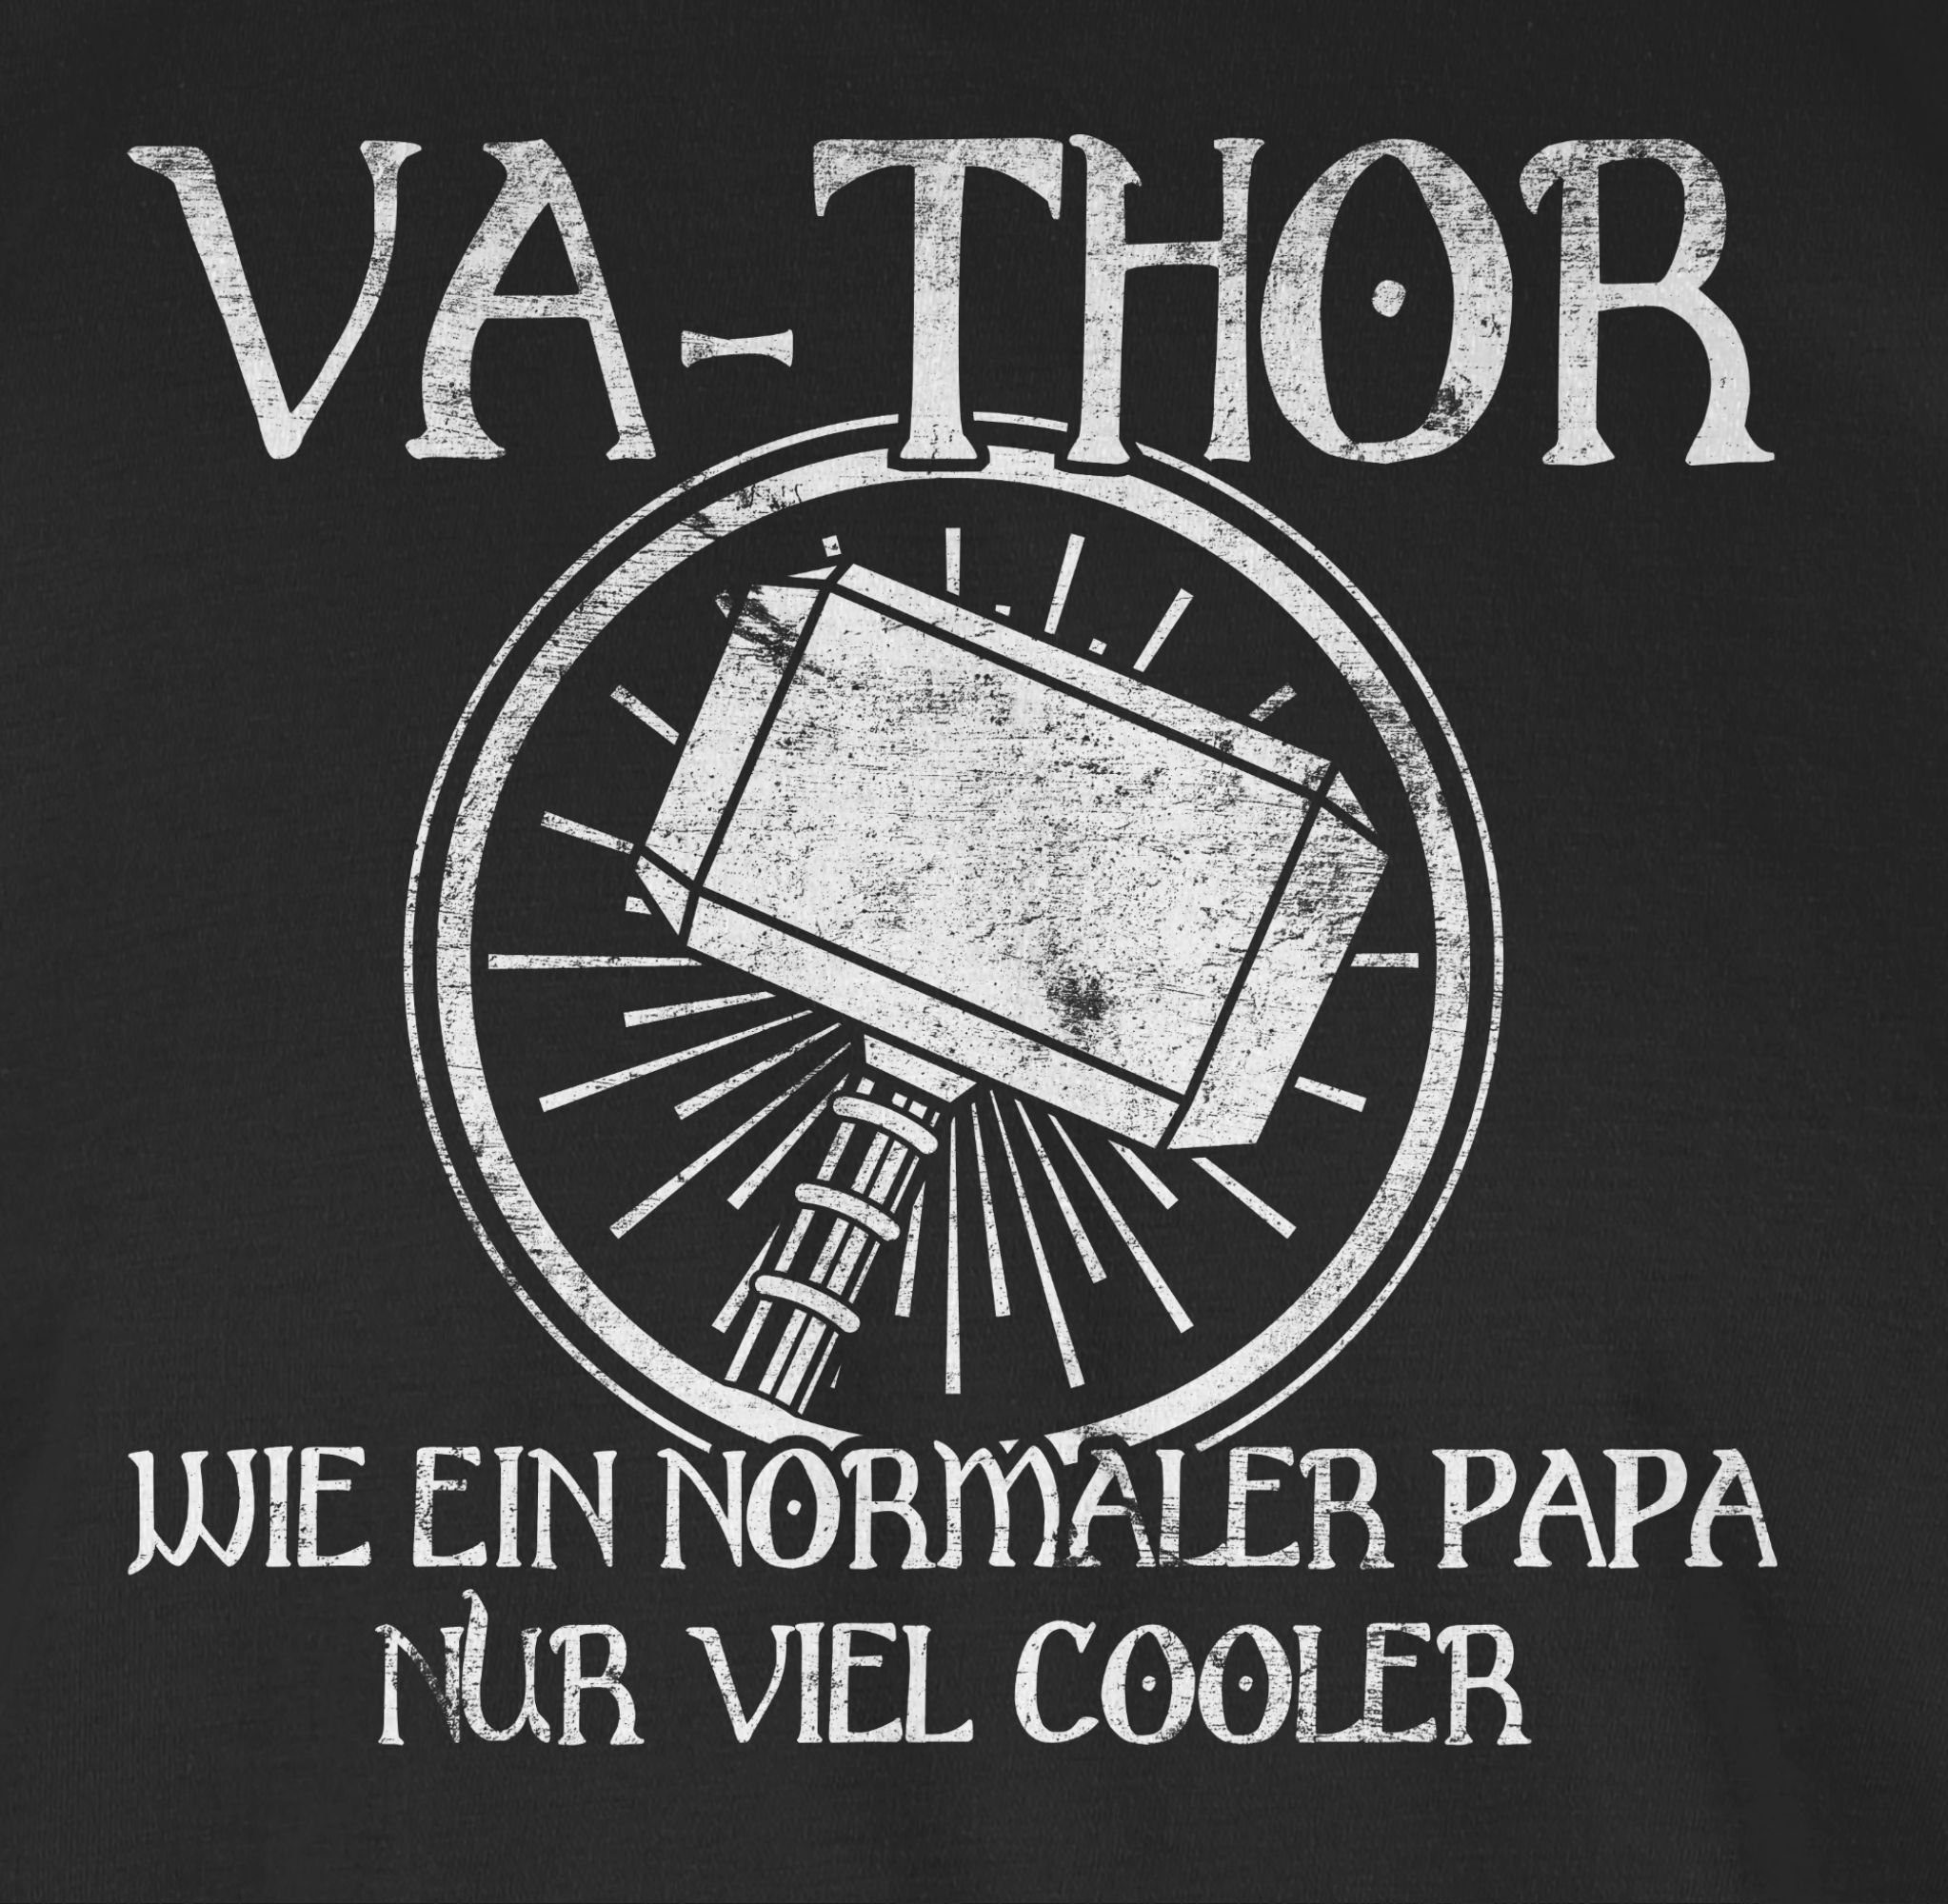 Geschenk nur wie Schwarz Shirtracer 01 T-Shirt Papa ein Papa Vatertag für normaler cooler Vathor viel